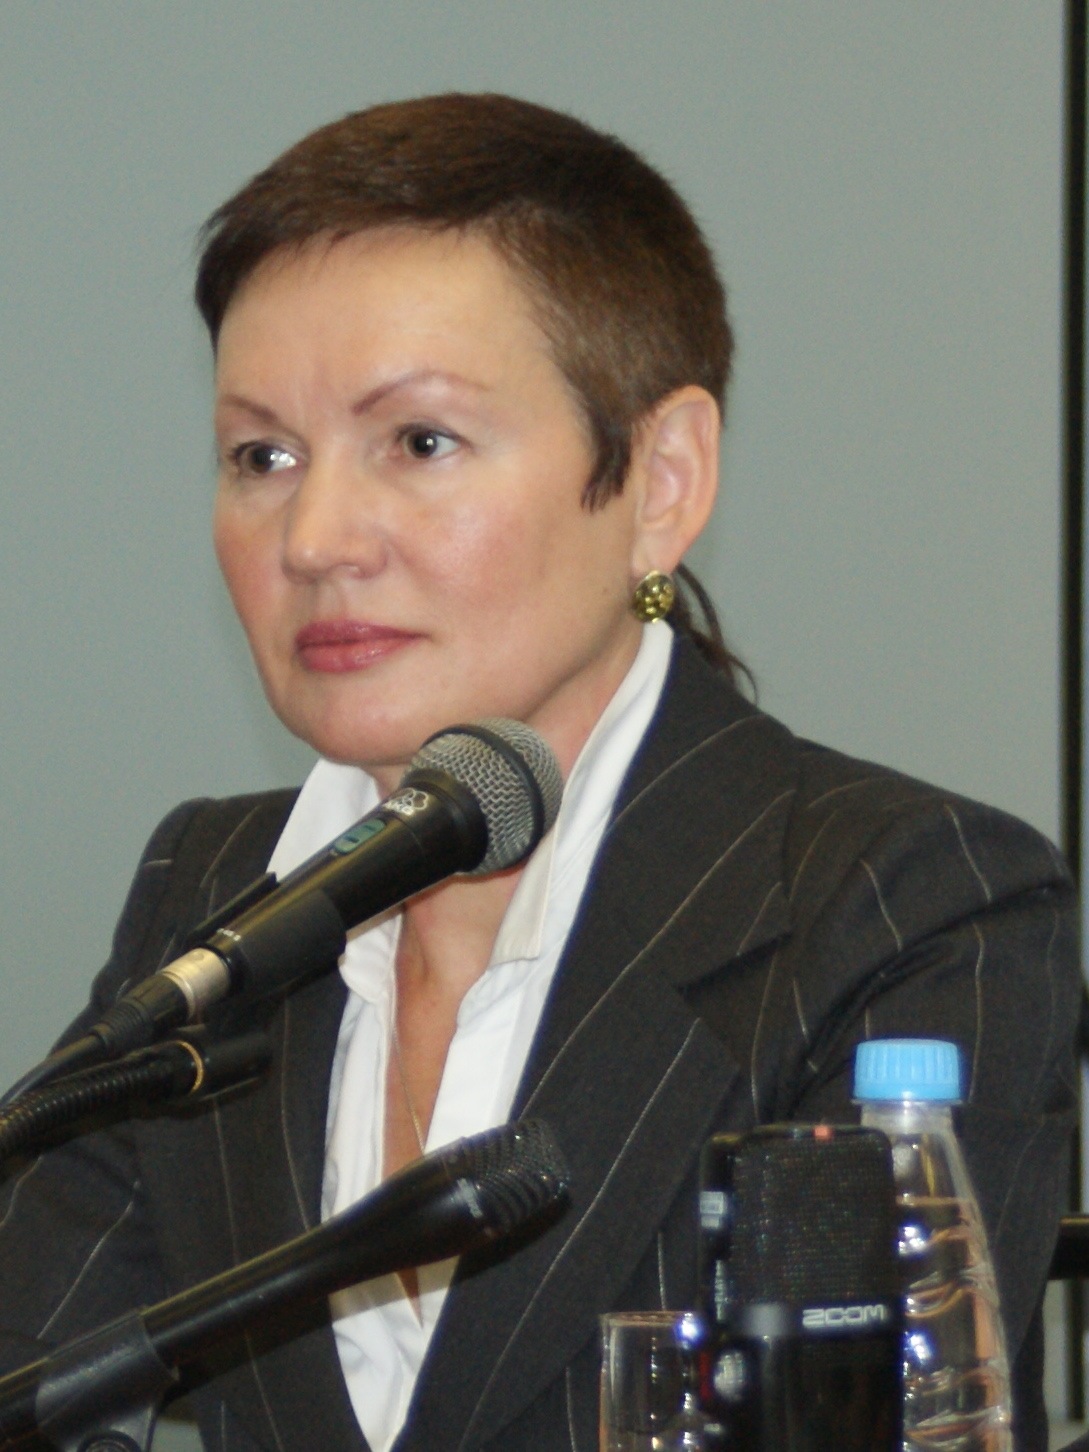 Хоботова Татьяна Владимировна, начальник отдела ипотечного кредитования филиала ВТБ24 в Санкт-Петербугре